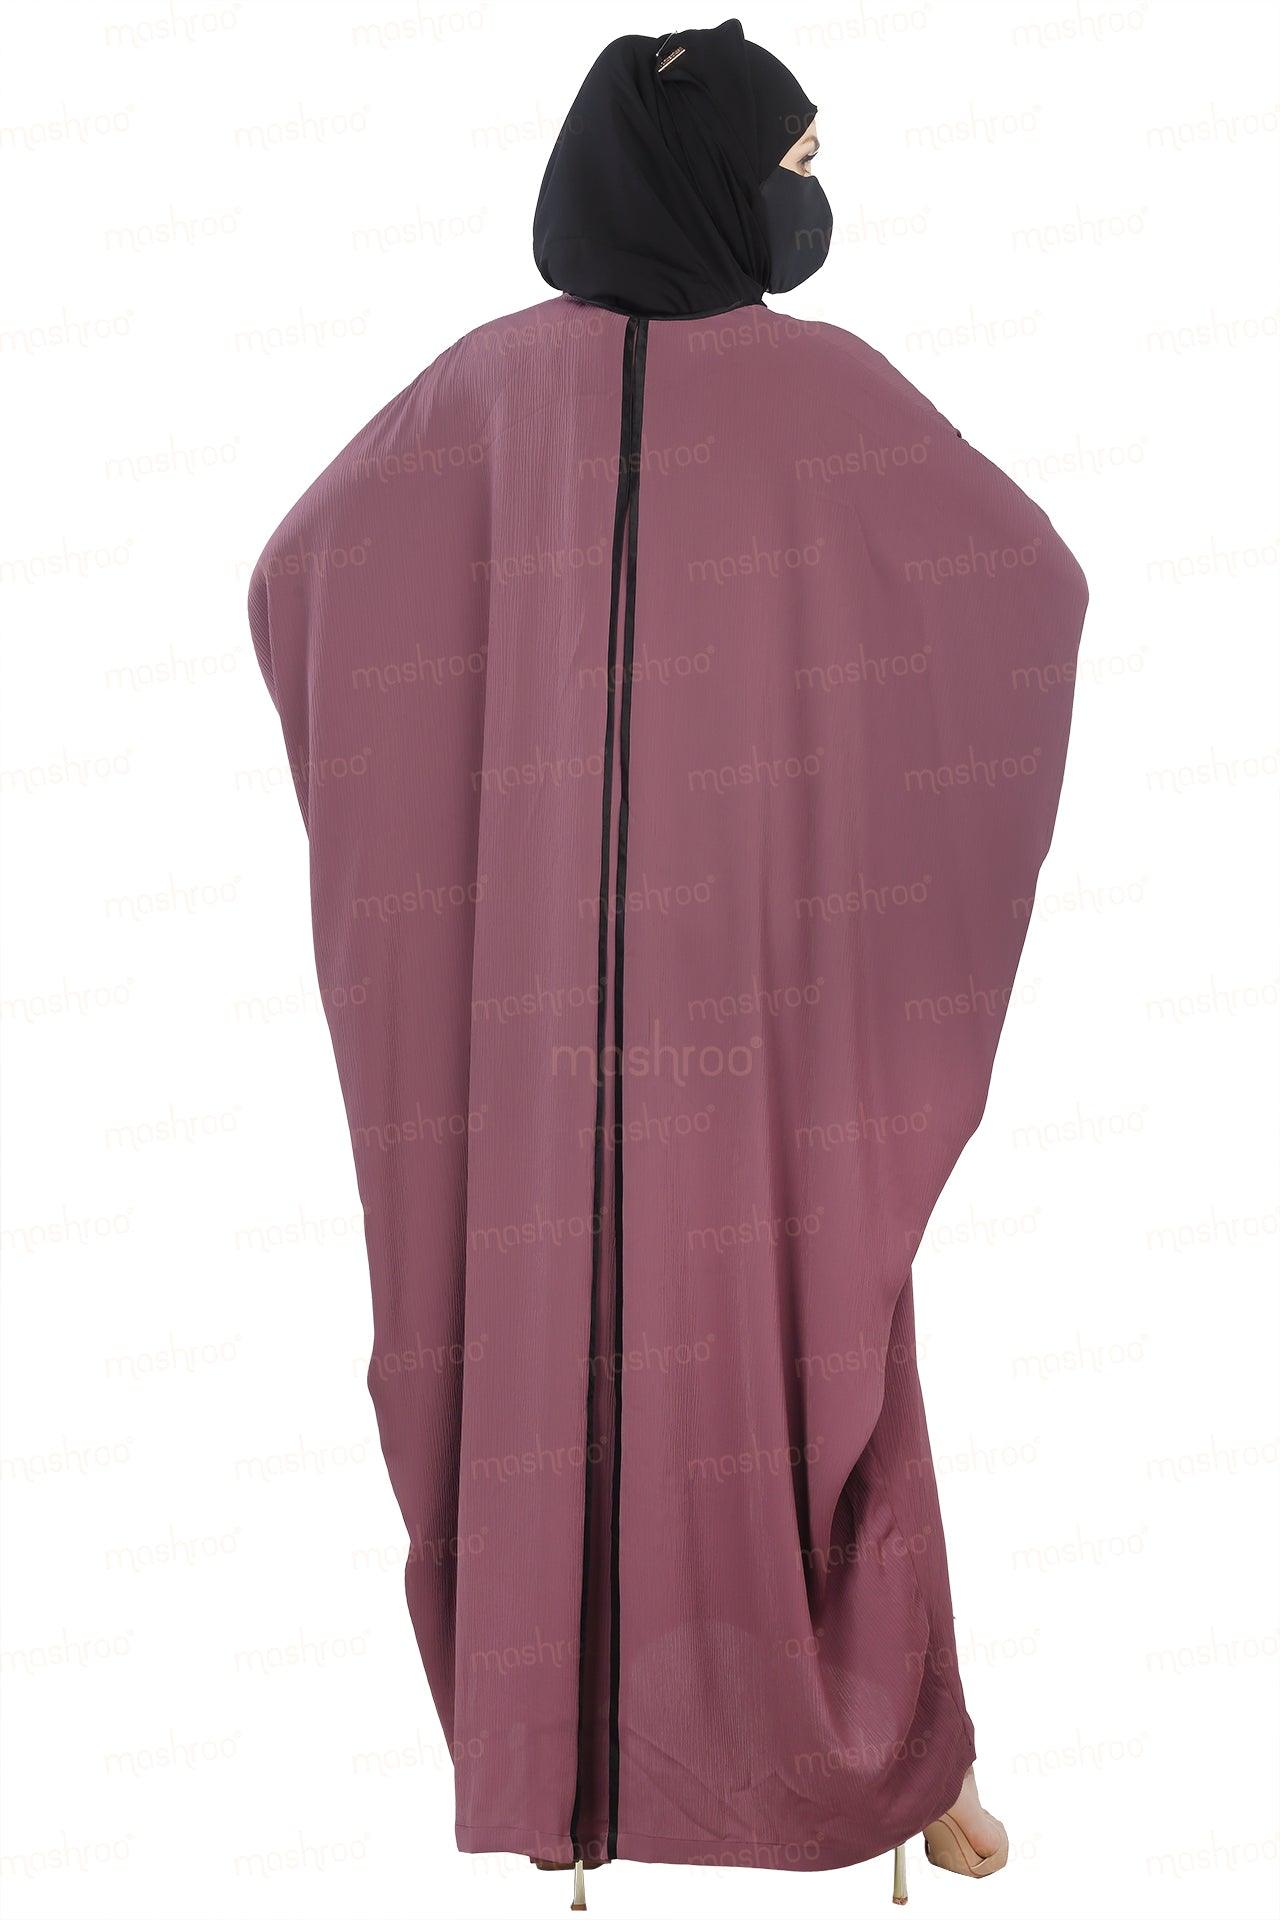 Premium Wing Sleeves Abaya - Mashroo